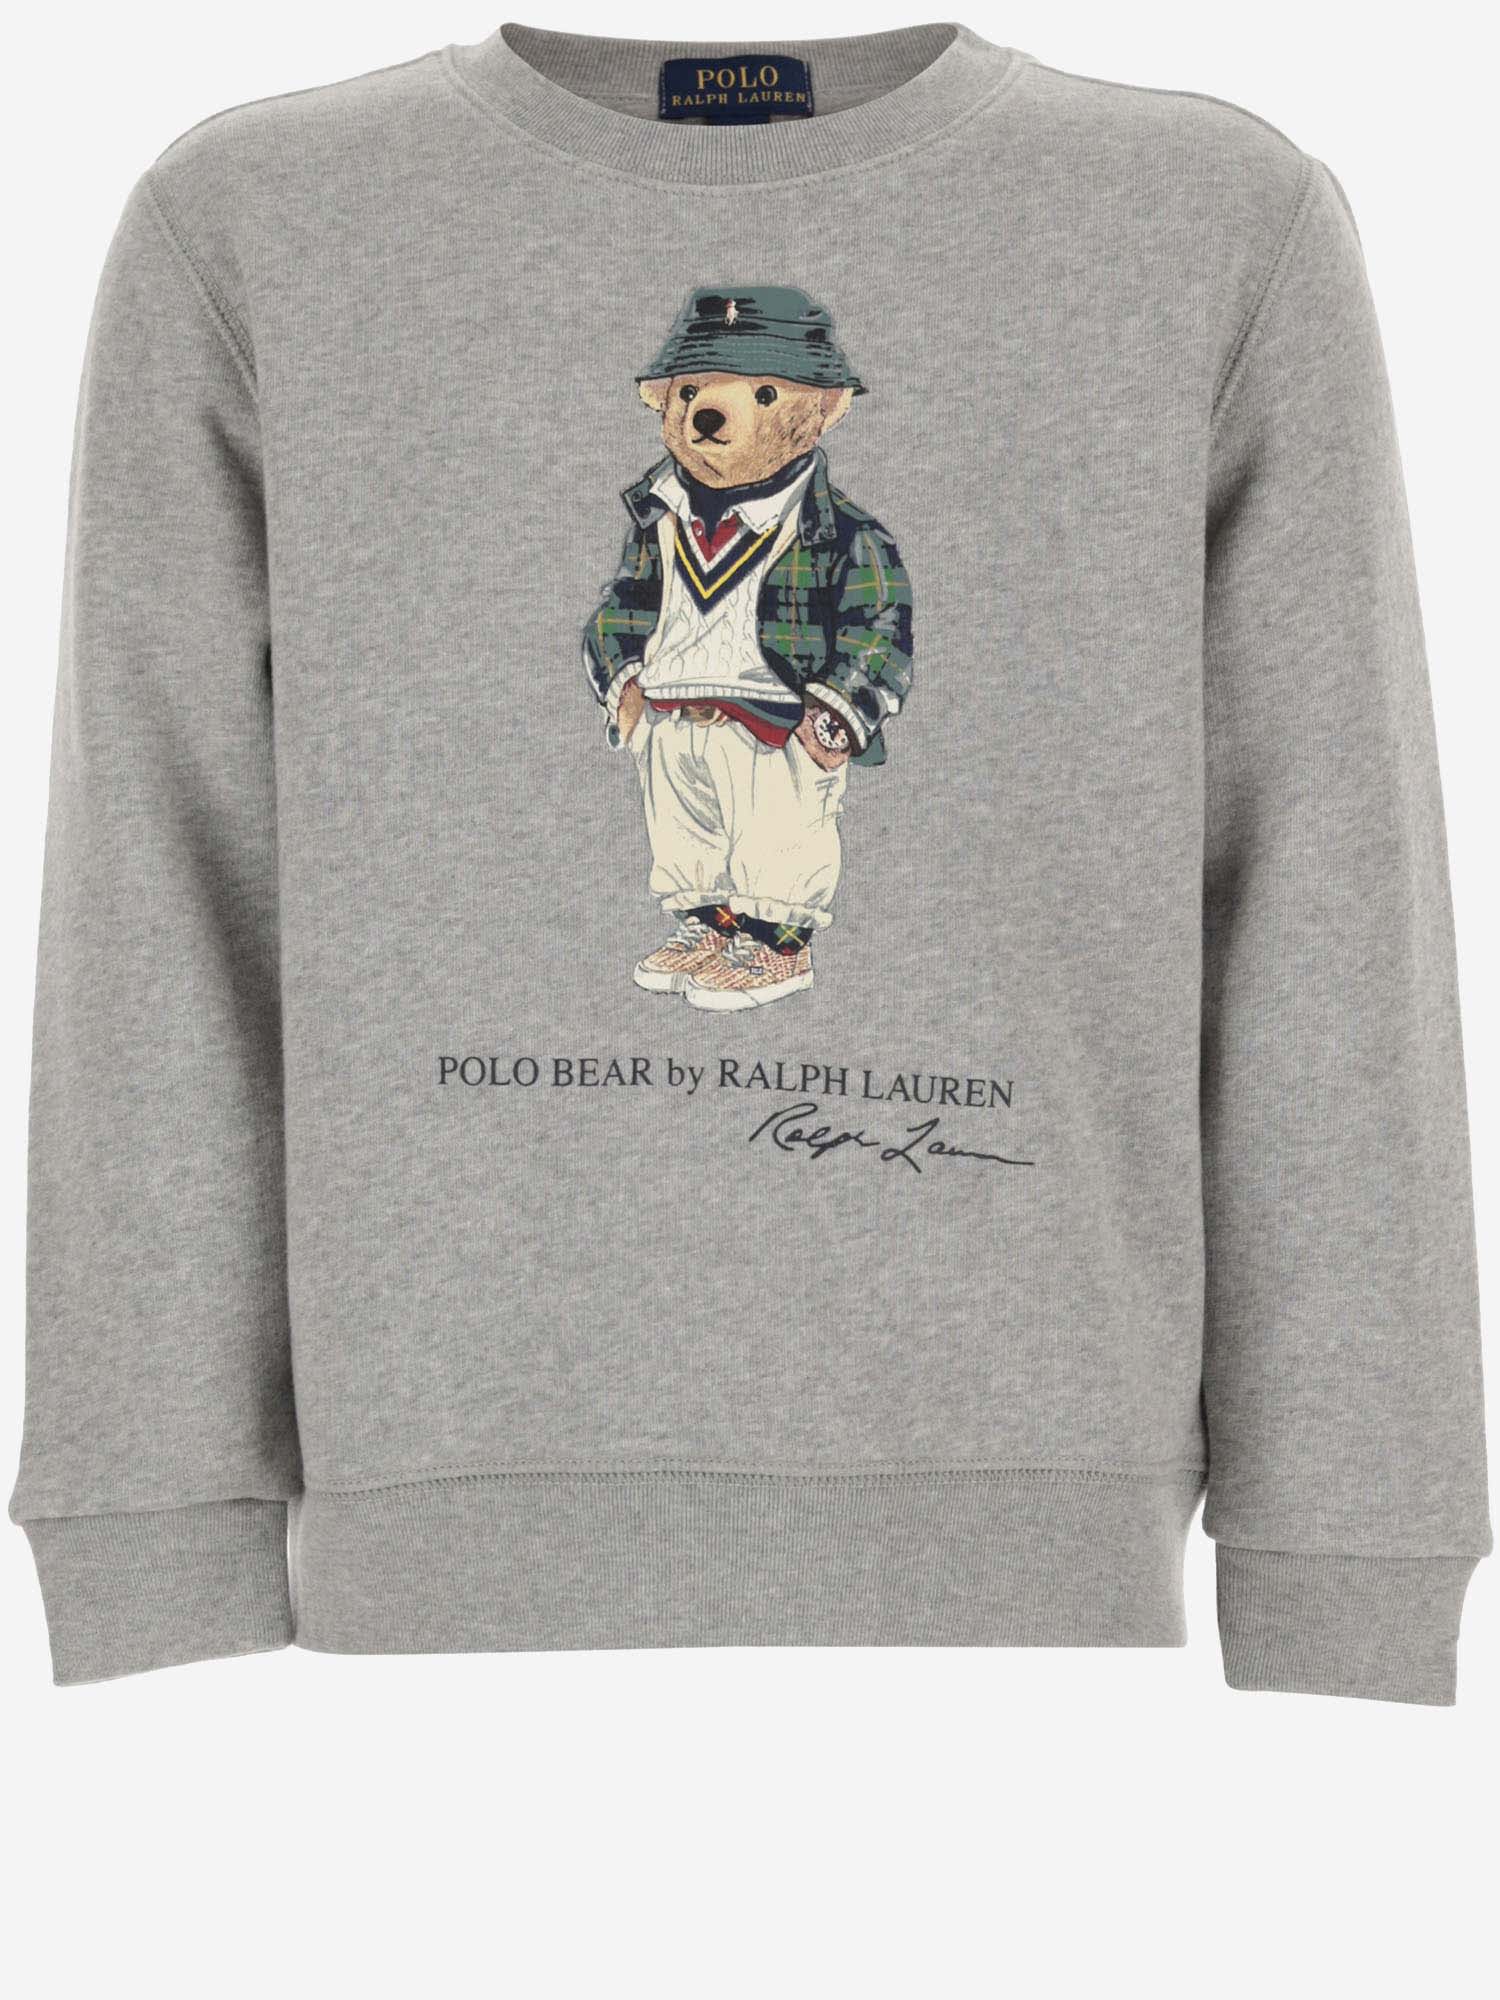 Ralph Lauren Kids' Cotton Blend Sweatshirt With Polo Bear